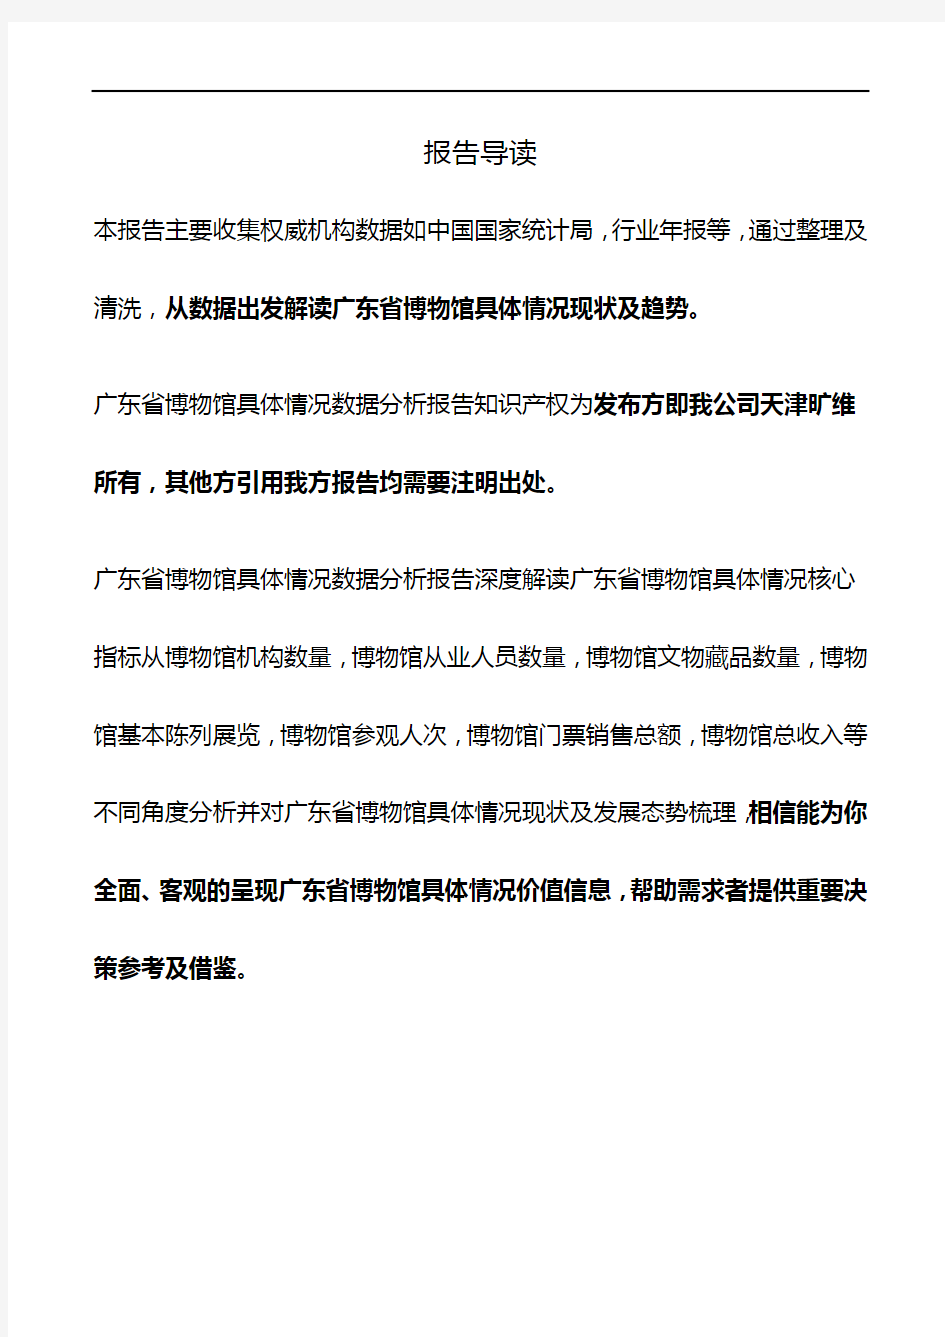 广东省博物馆具体情况3年数据分析报告2019版